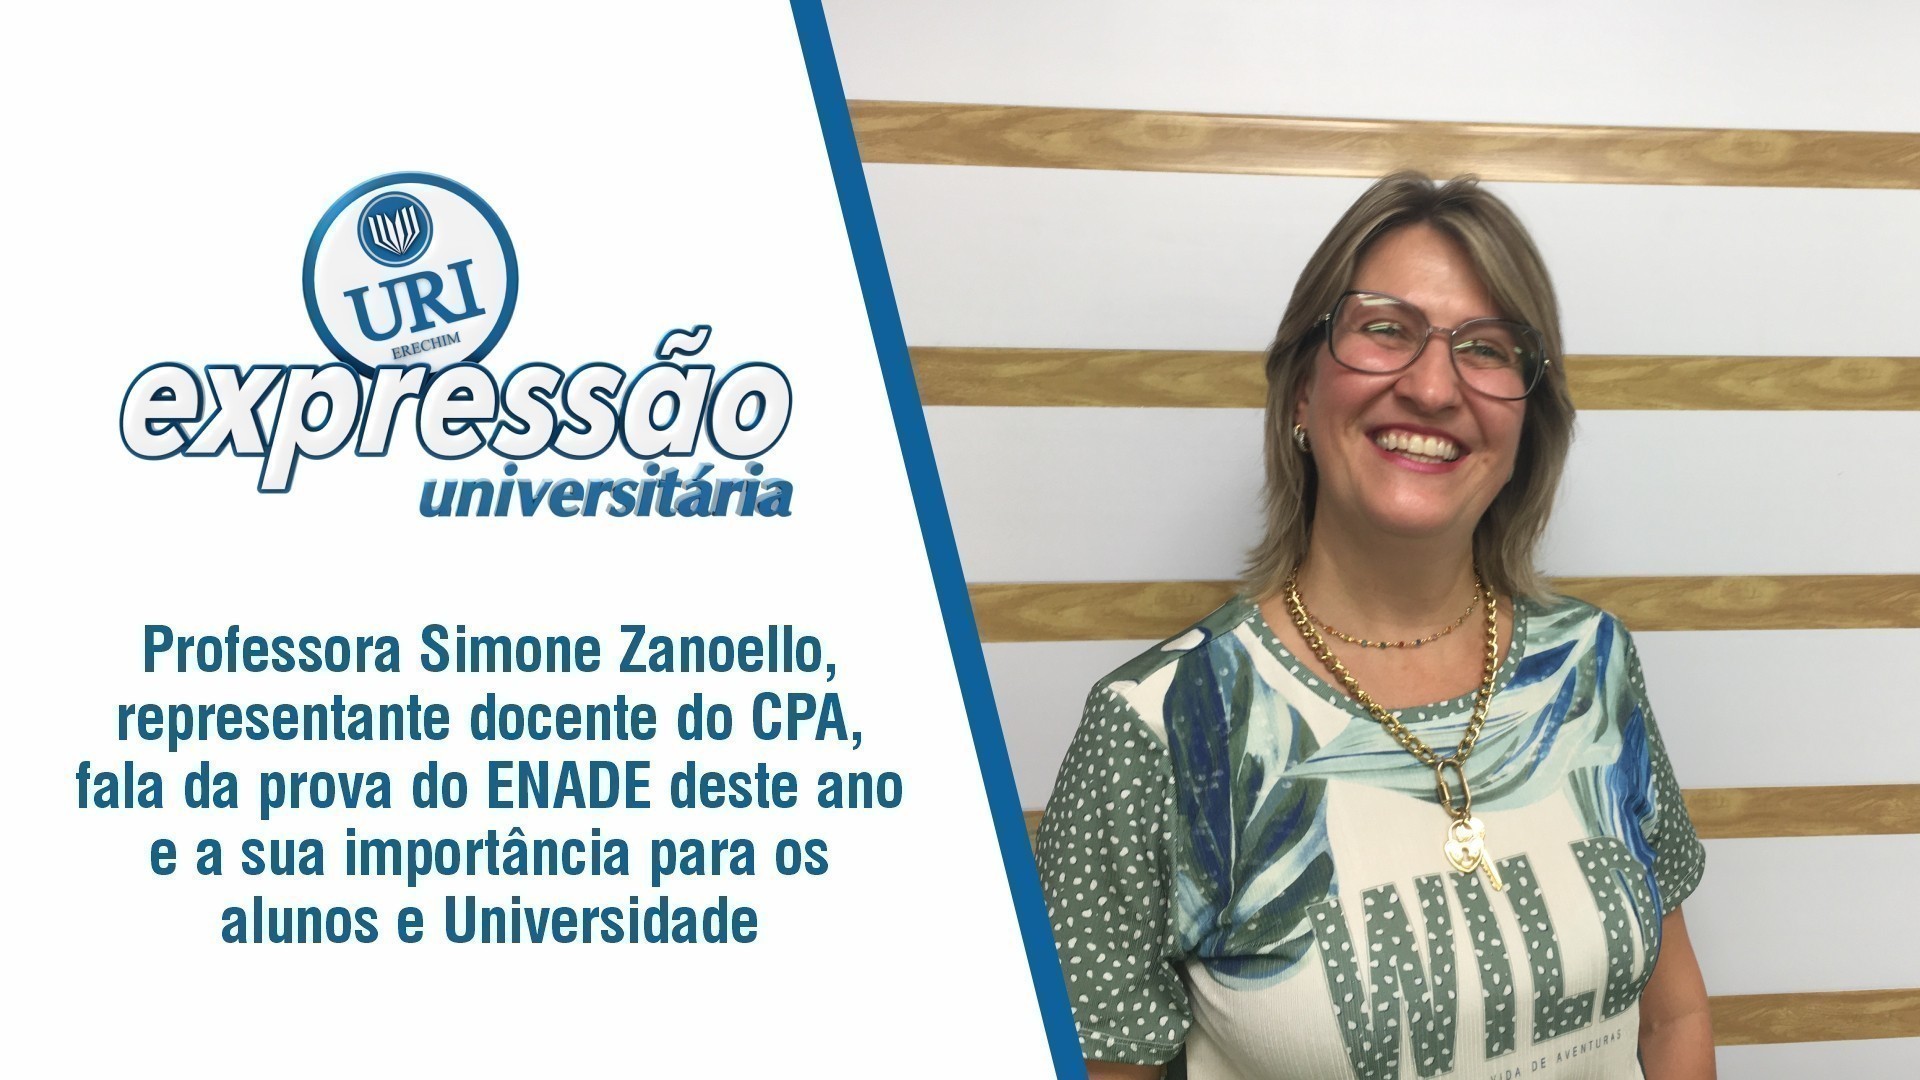 Professora Simone Zanoello fala da prova do ENADE deste ano e a sua importância para os alunos e Universidade.